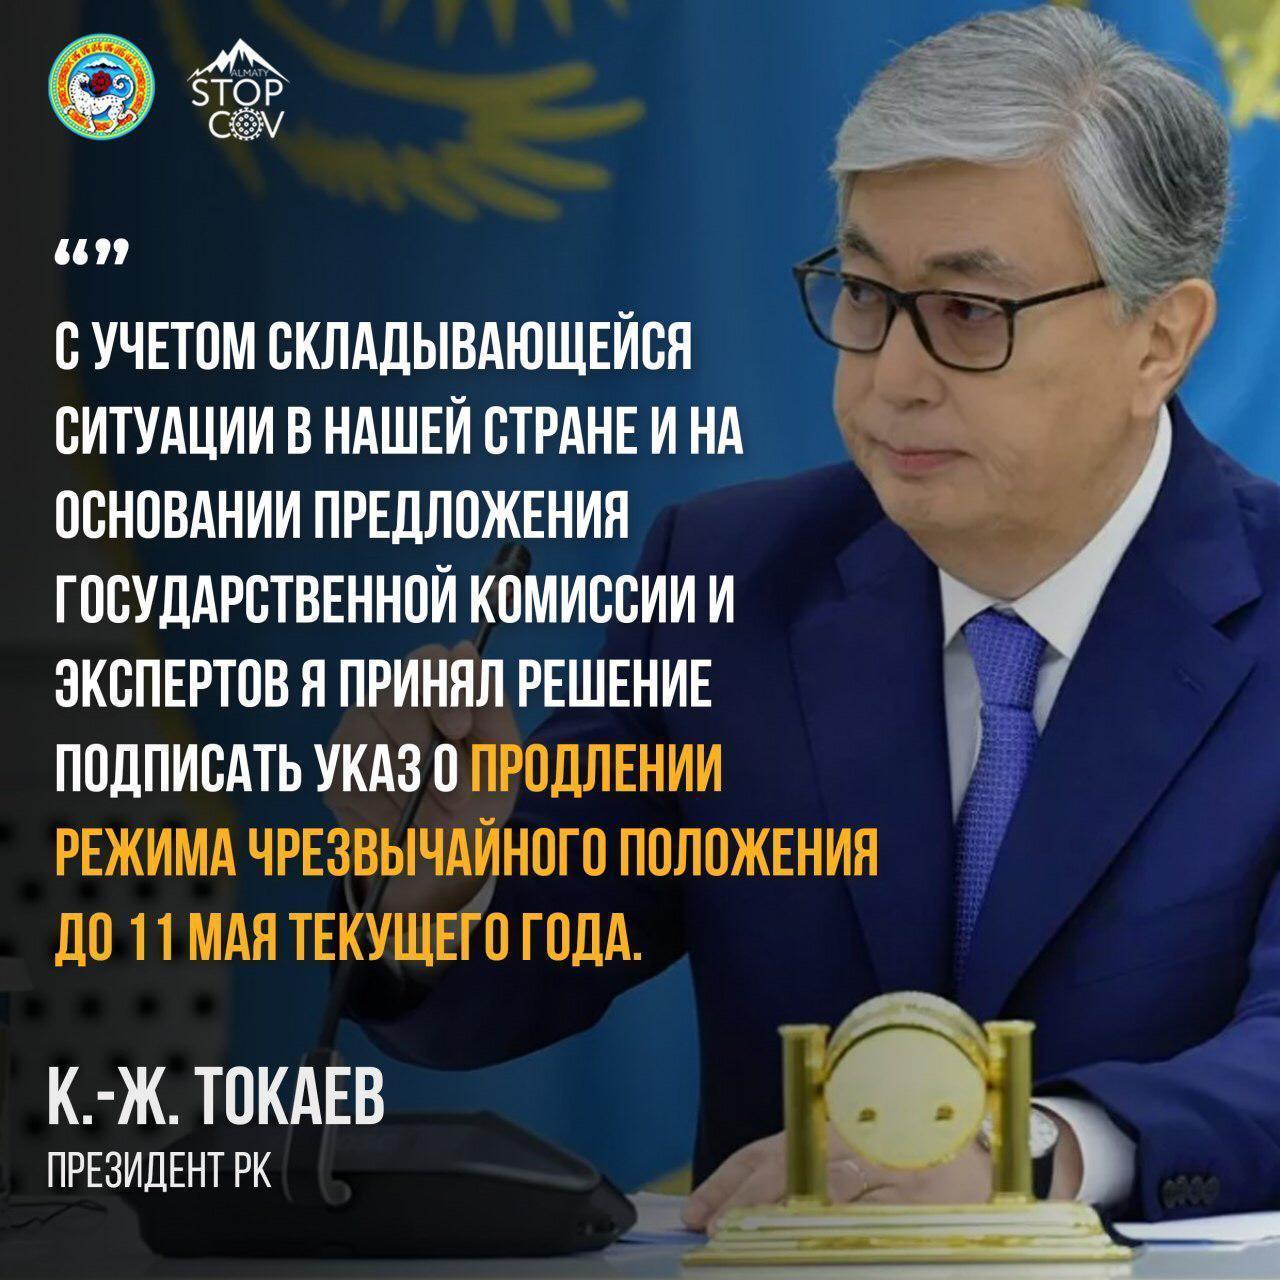 Режим чрезвычайного положения будет продлен до 11 мая – Токаев